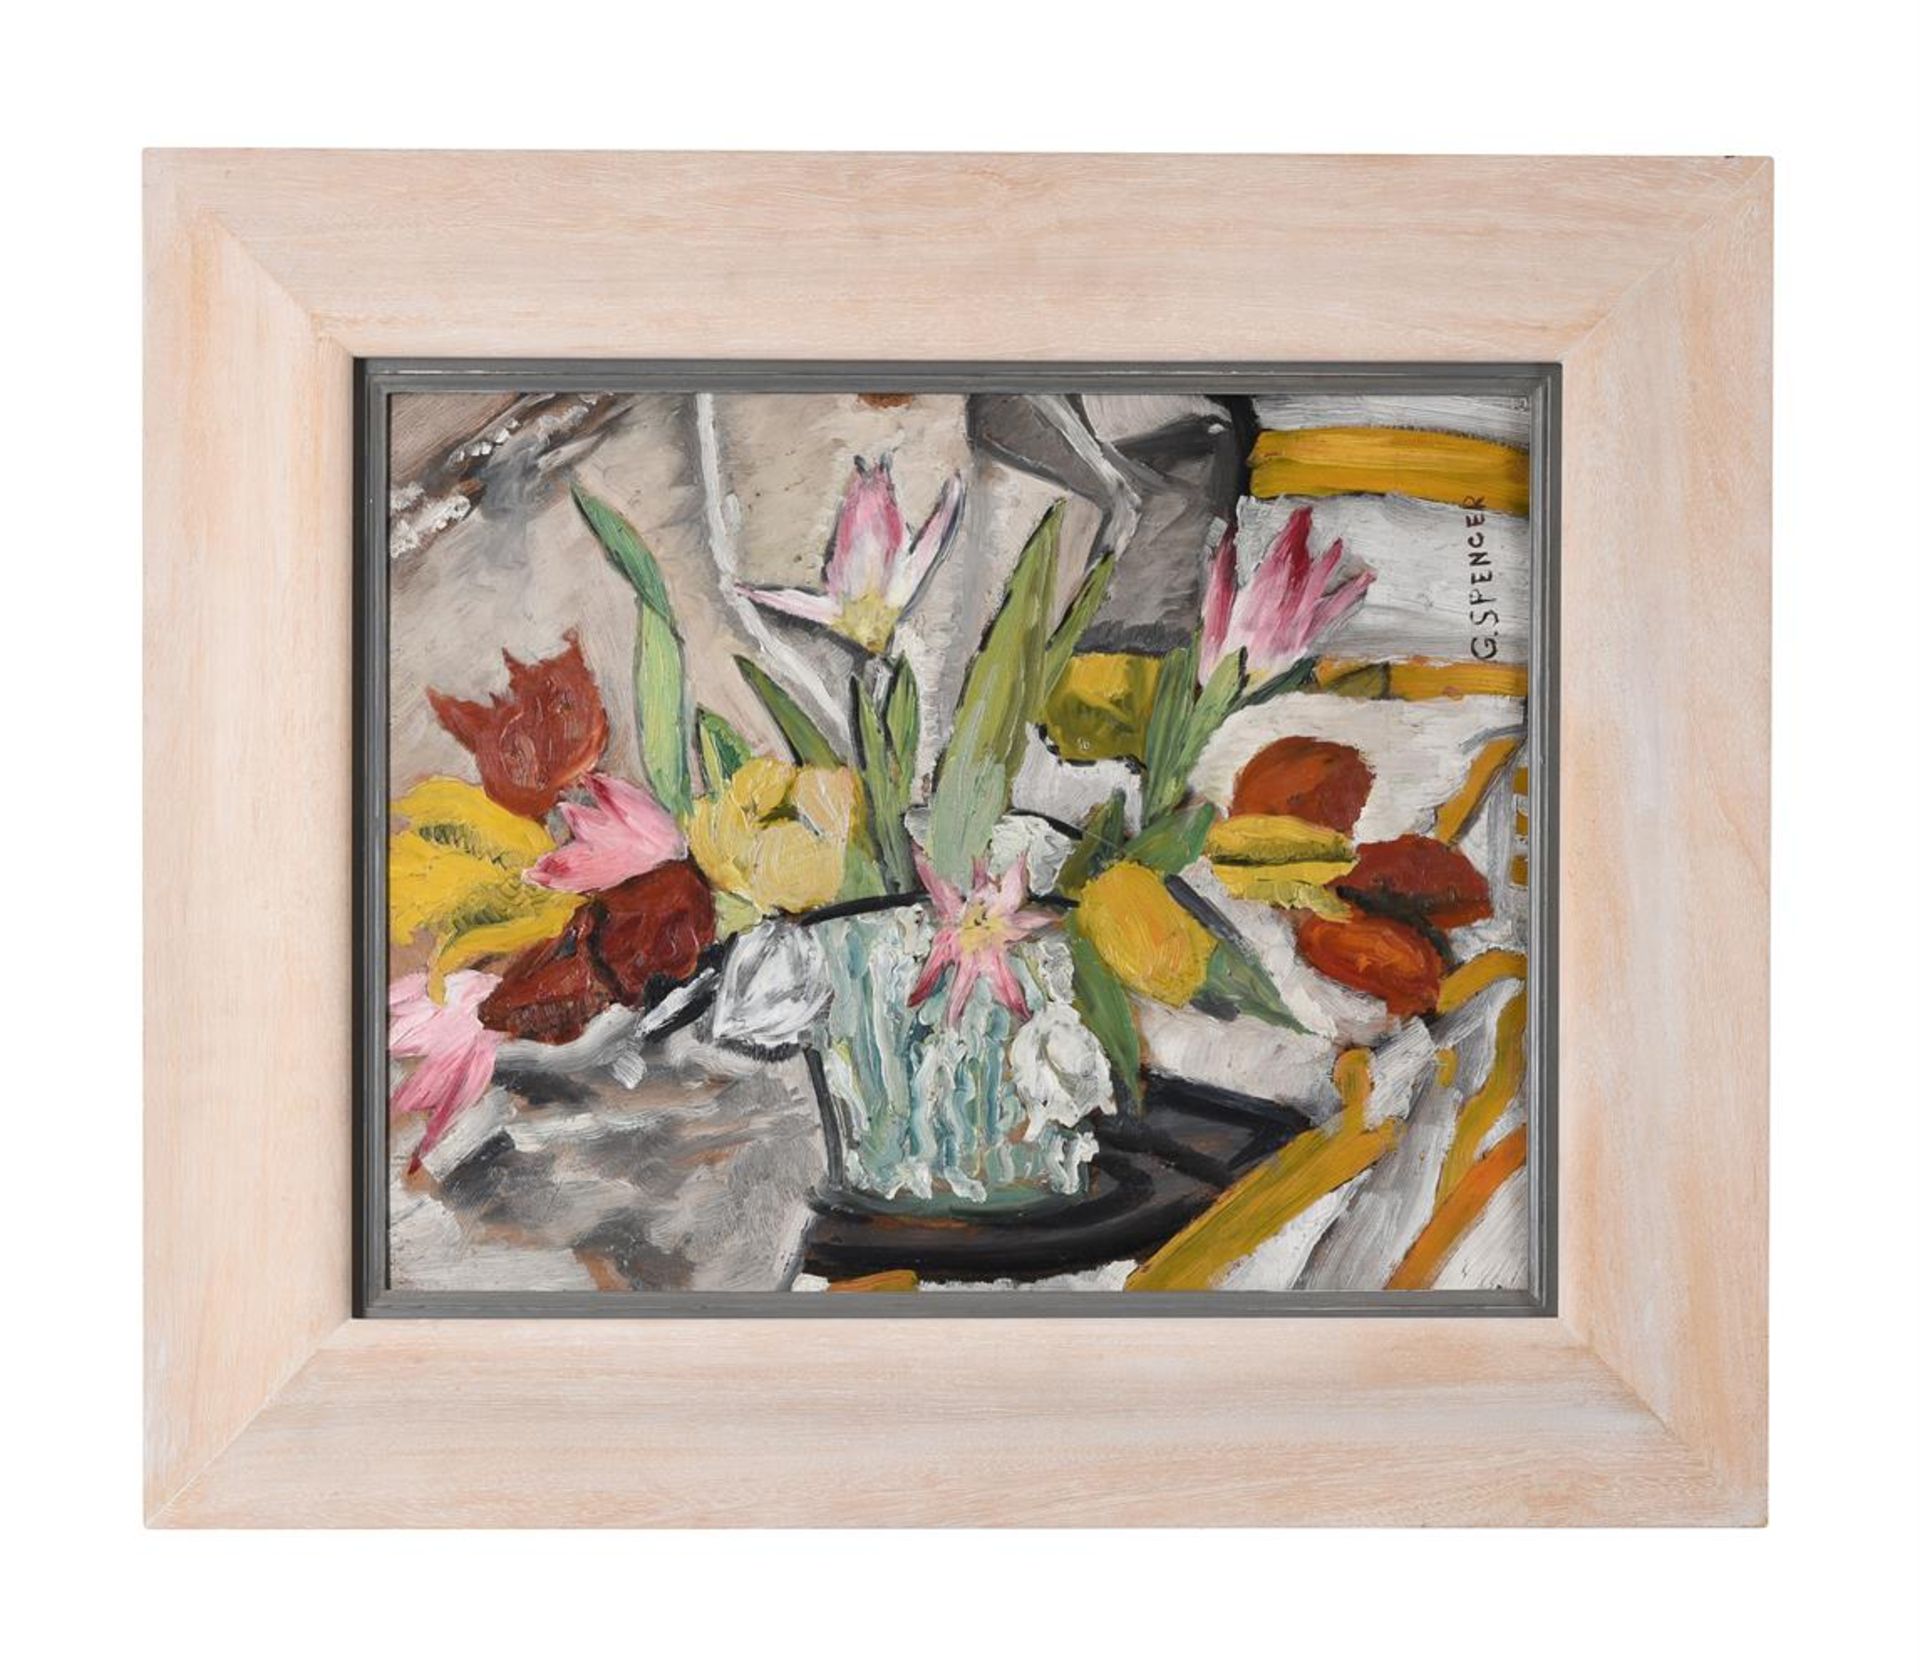 λ GILBERT SPENCER (BRITISH 1892-1979), STILL LIFE OF FLOWERS IN A VASE - Image 2 of 3